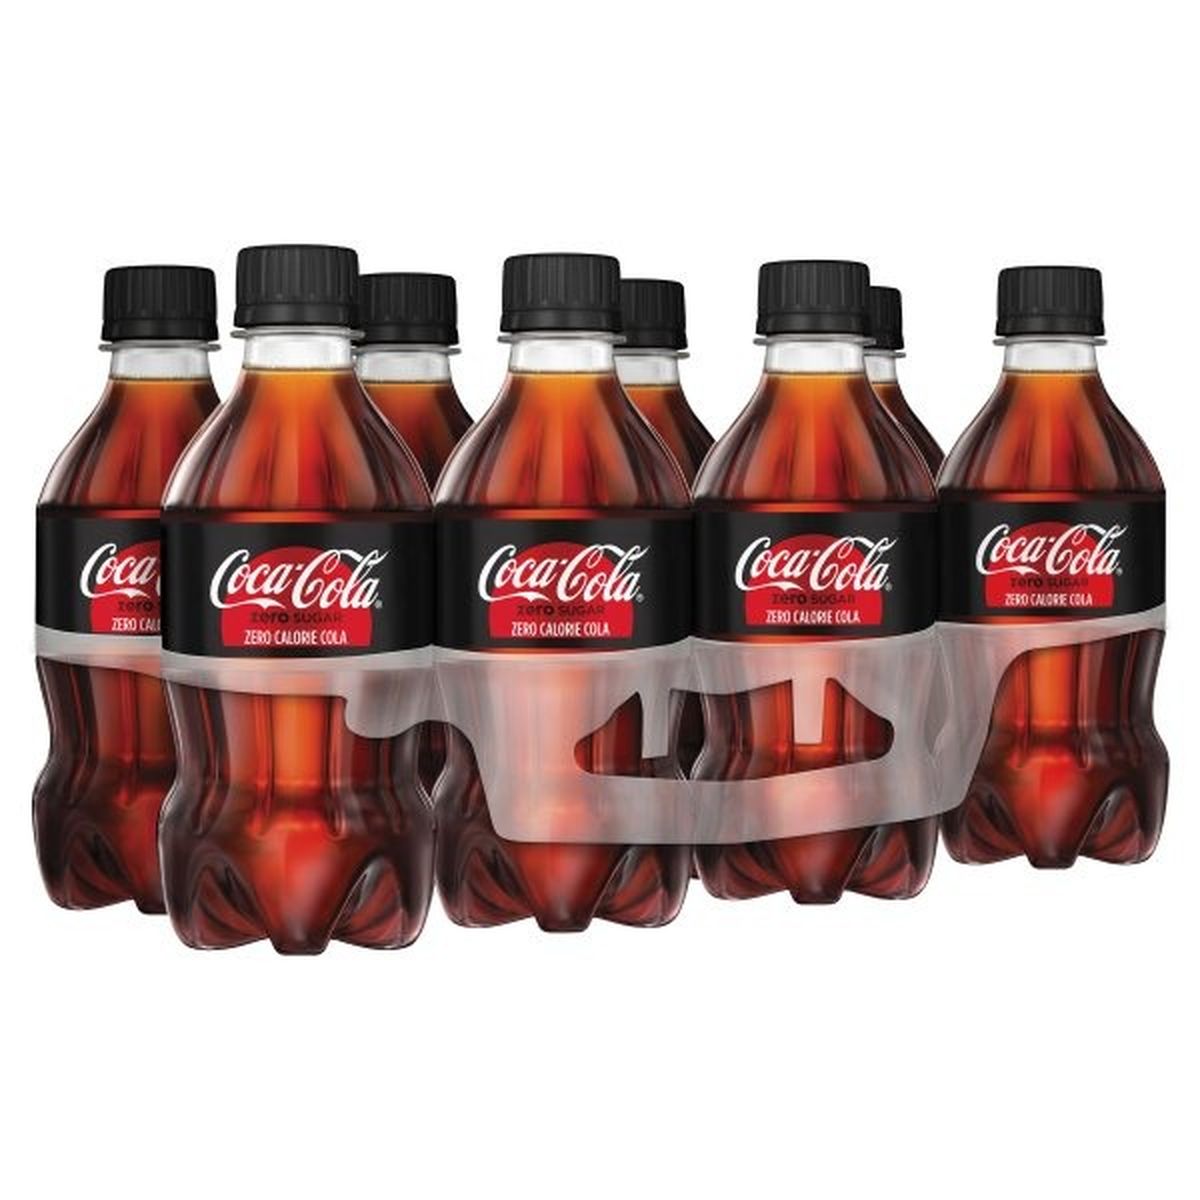 Calories in Coca-Cola Diet Cola